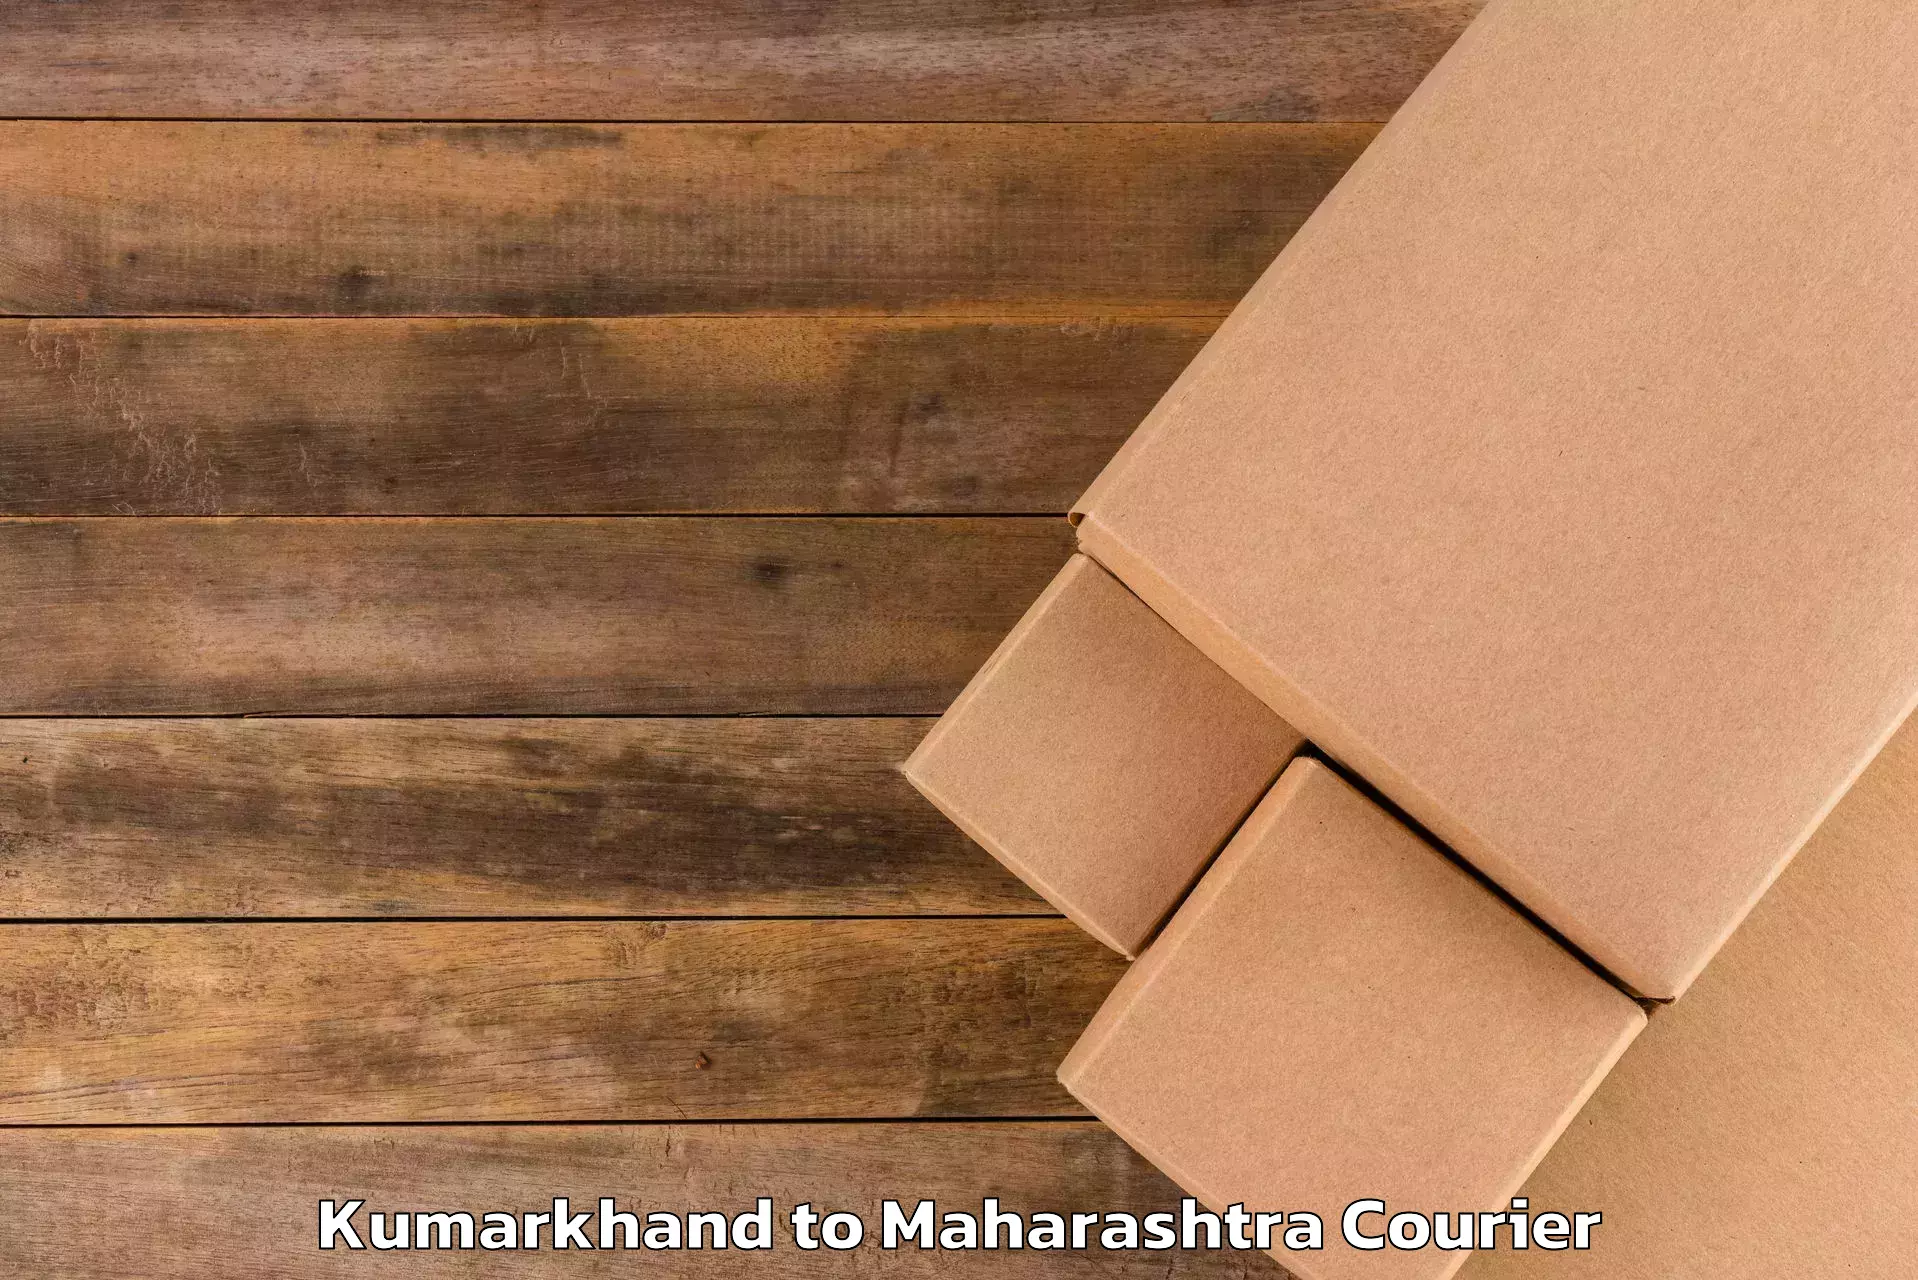 Luggage transport operations Kumarkhand to Maharashtra